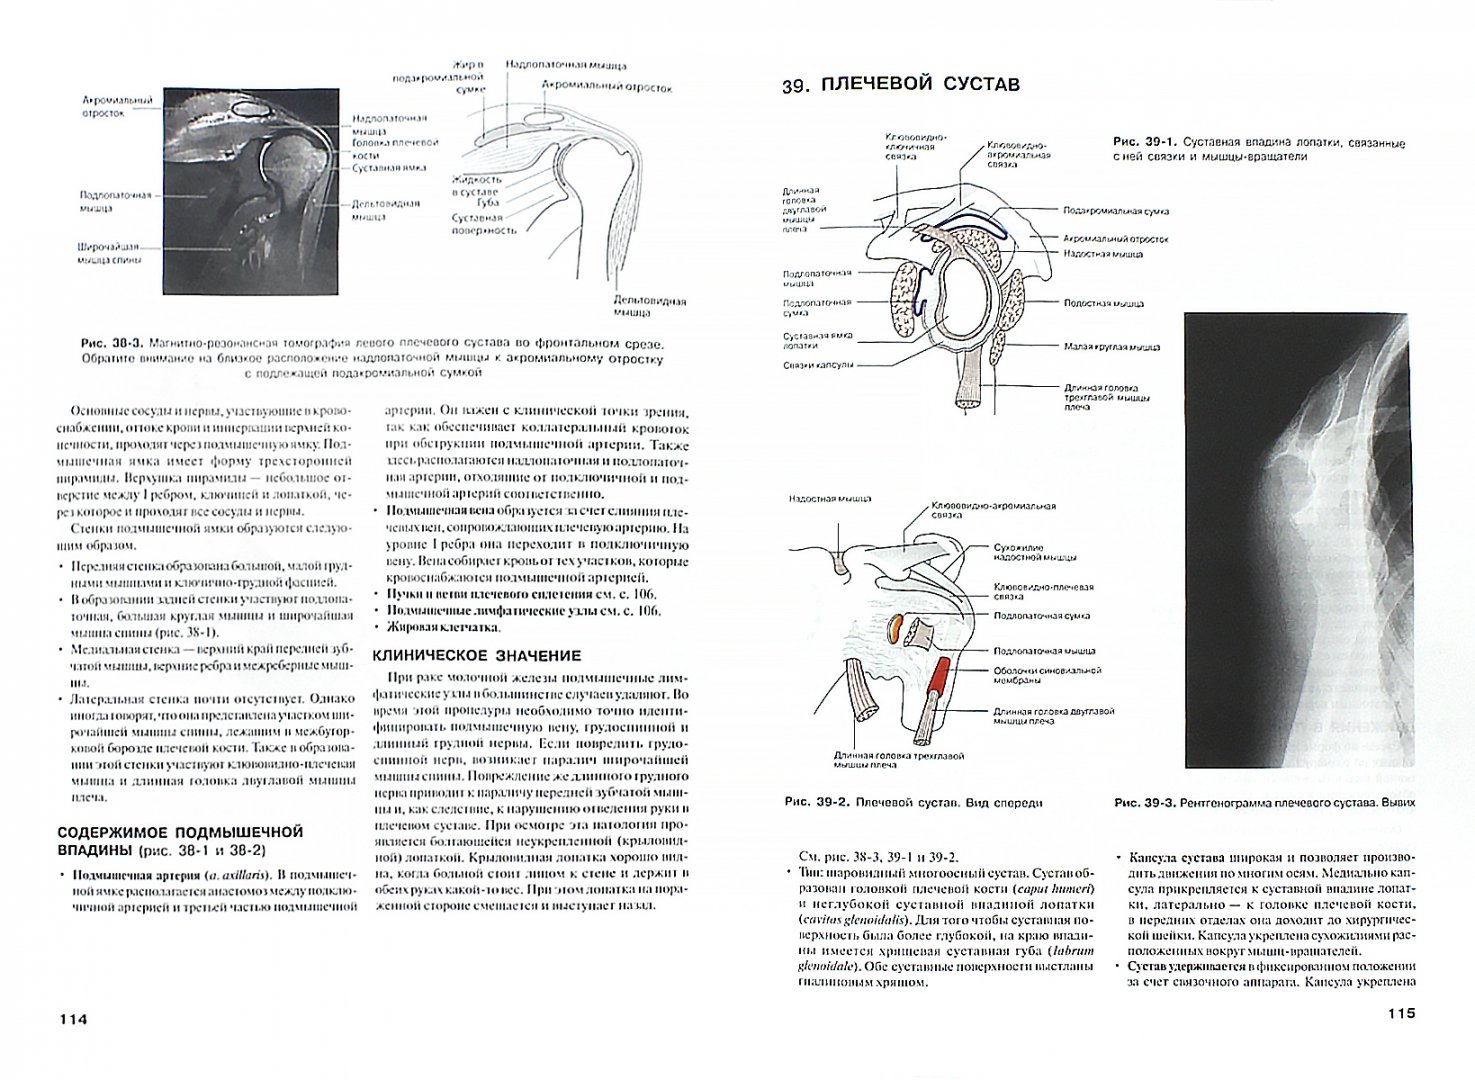 Иллюстрация 1 из 6 для Наглядная анатомия - Блэкберн, Фейц, Моффат | Лабиринт - книги. Источник: Лабиринт